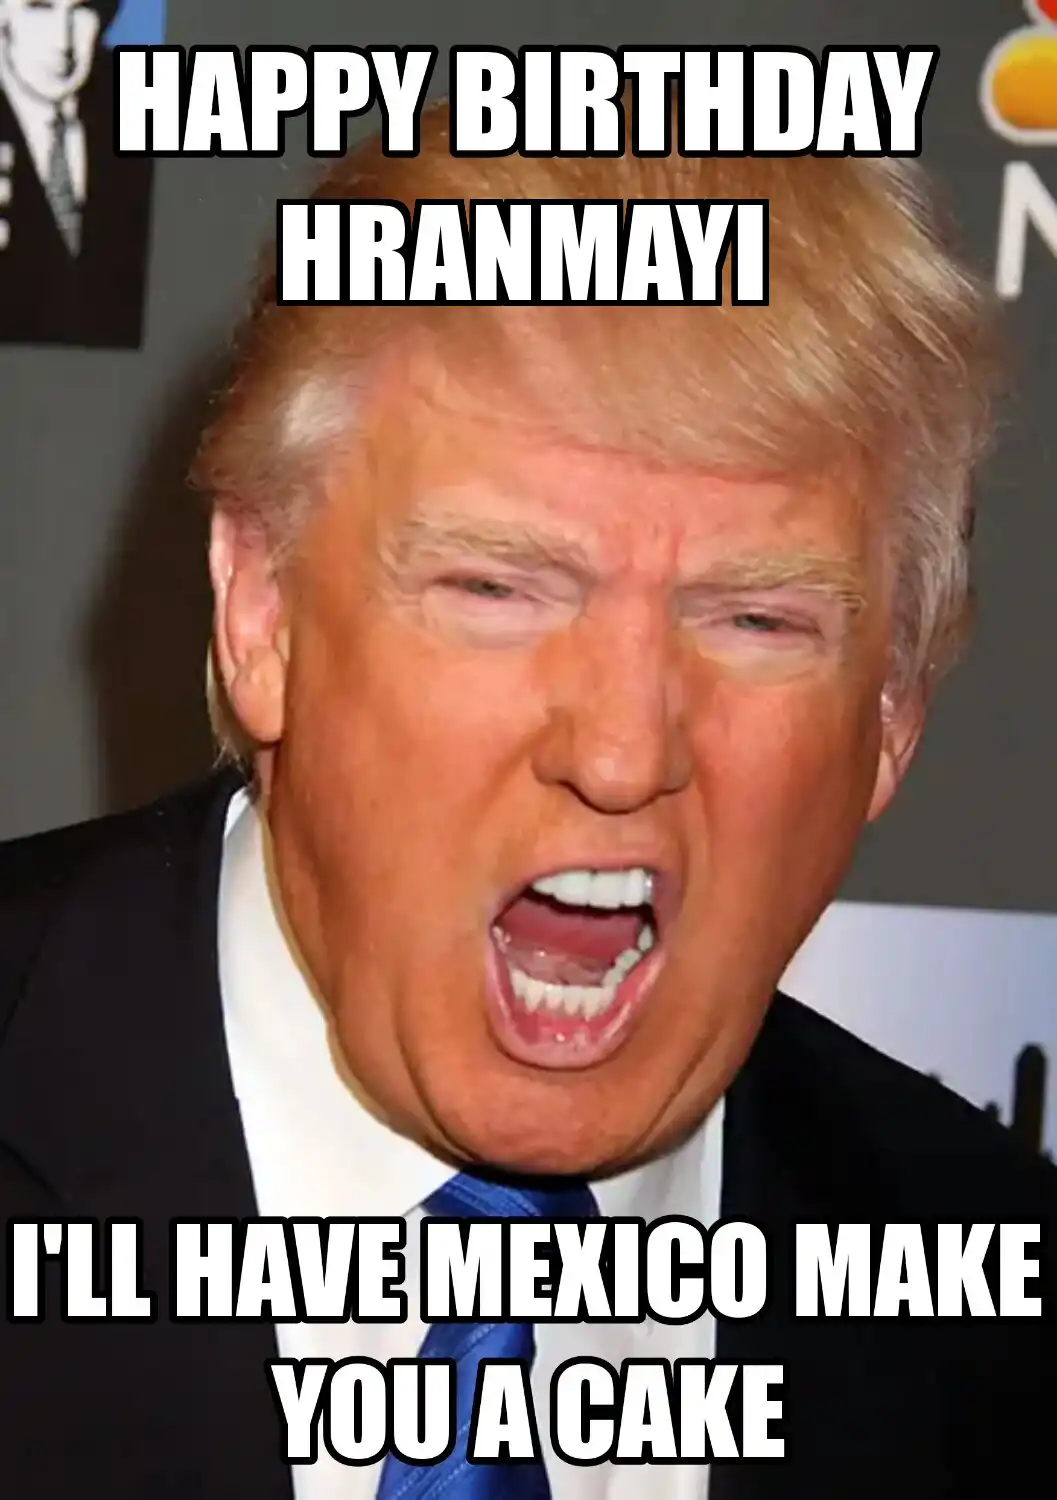 Happy Birthday Hranmayi Mexico Make You A Cake Meme